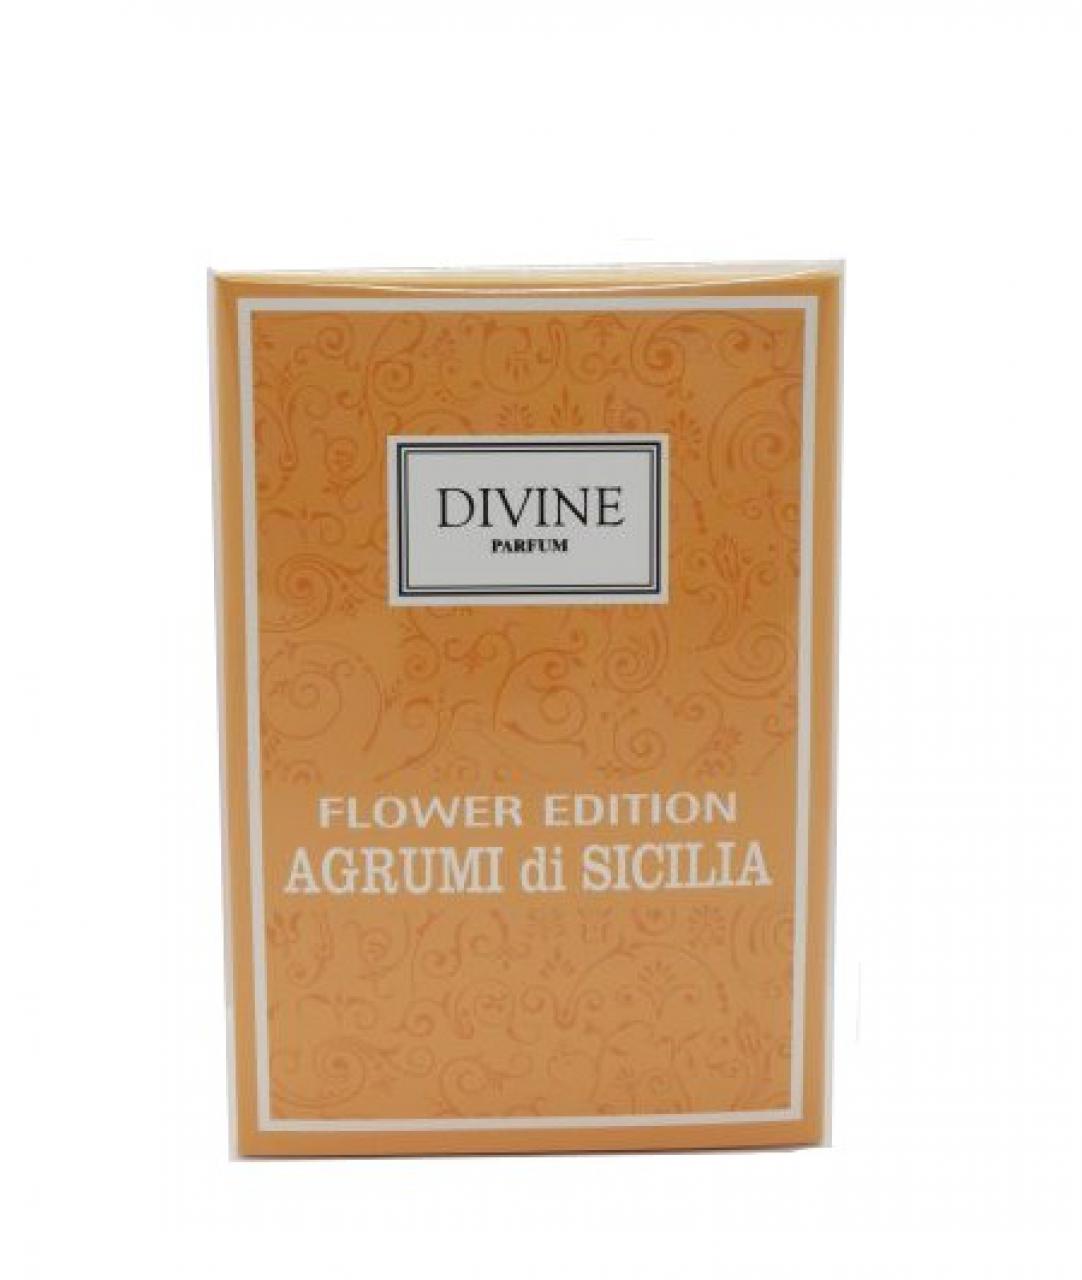 DIVINE PARFUM – FLOWER EDITION AGRUMI DI SICILIA